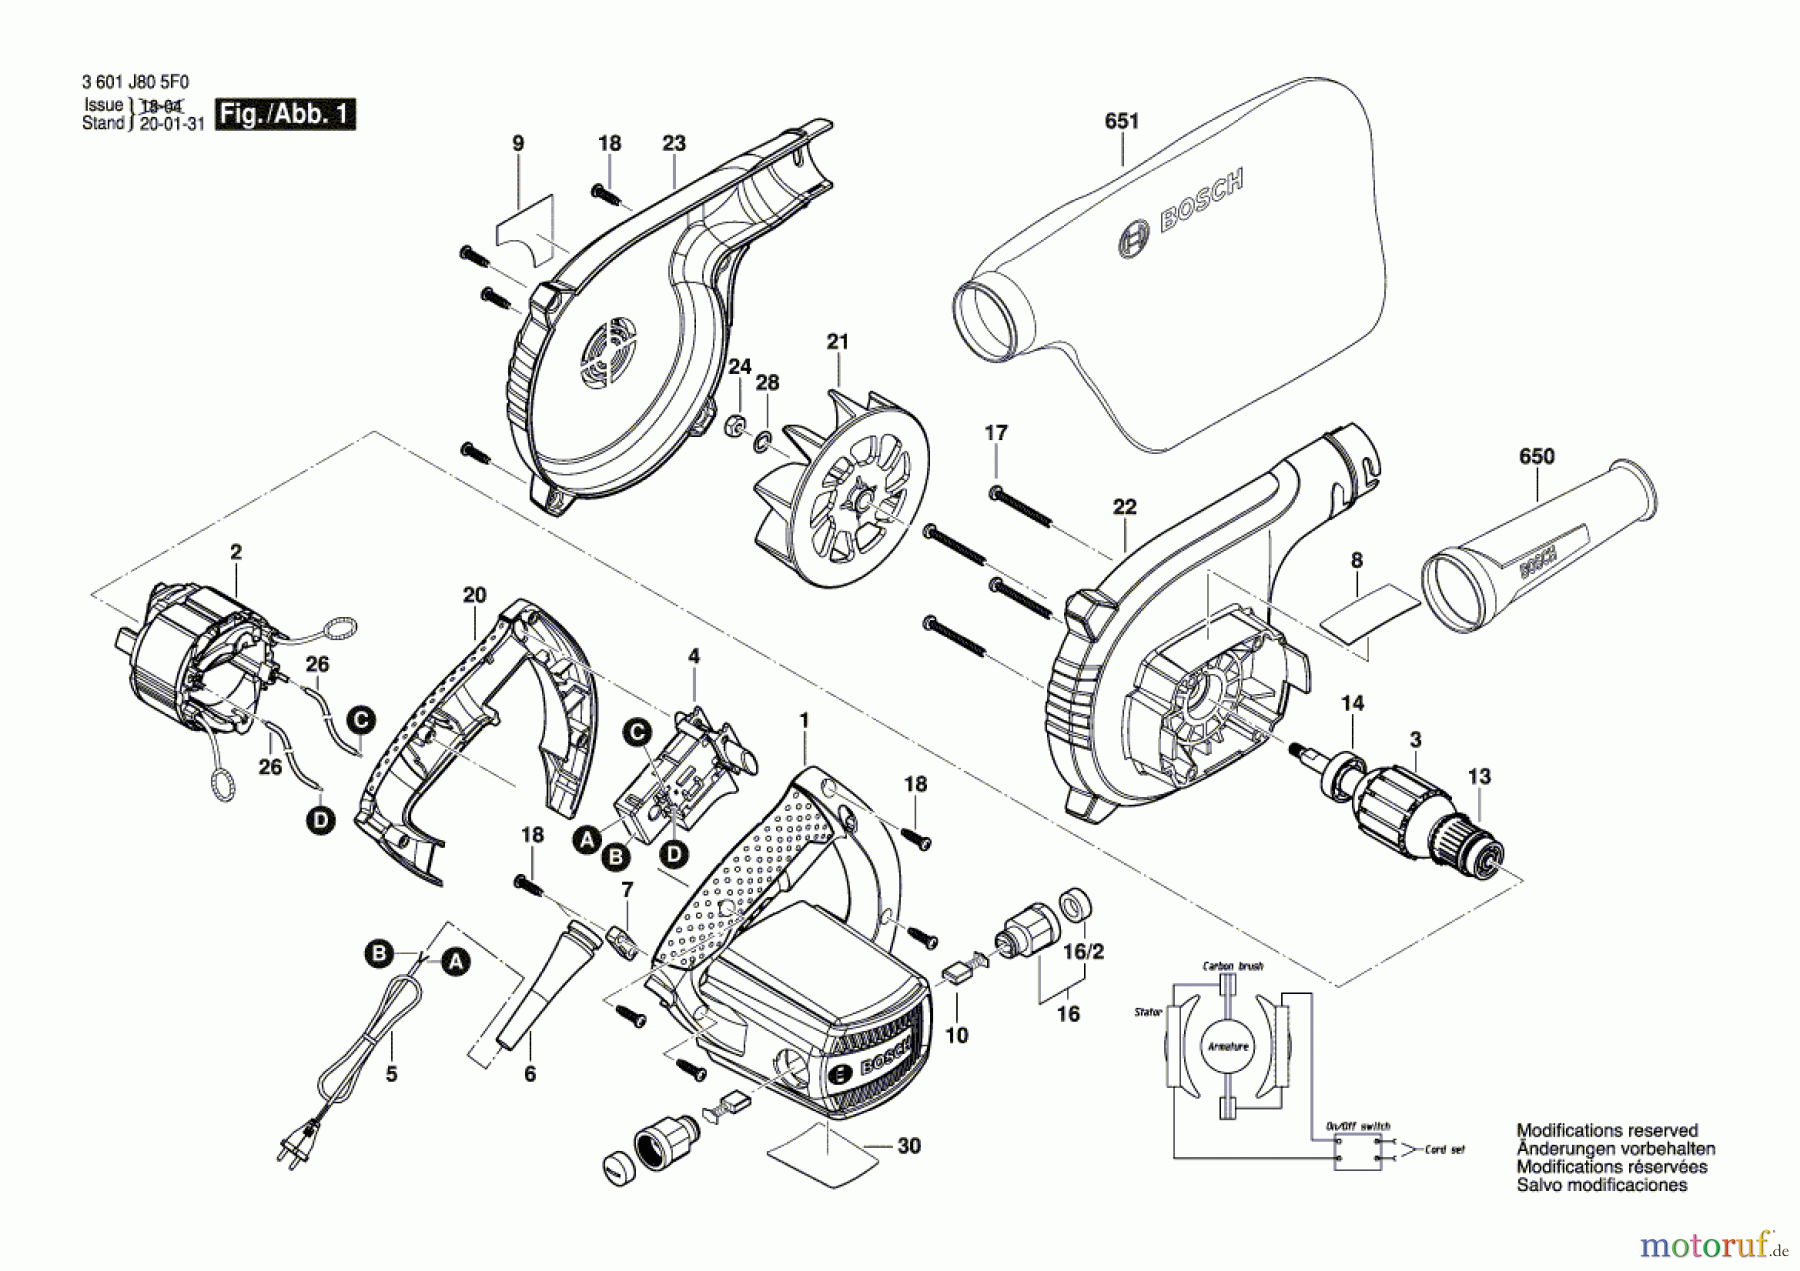  Bosch Werkzeug Druckgebläse GBL 620 Seite 1